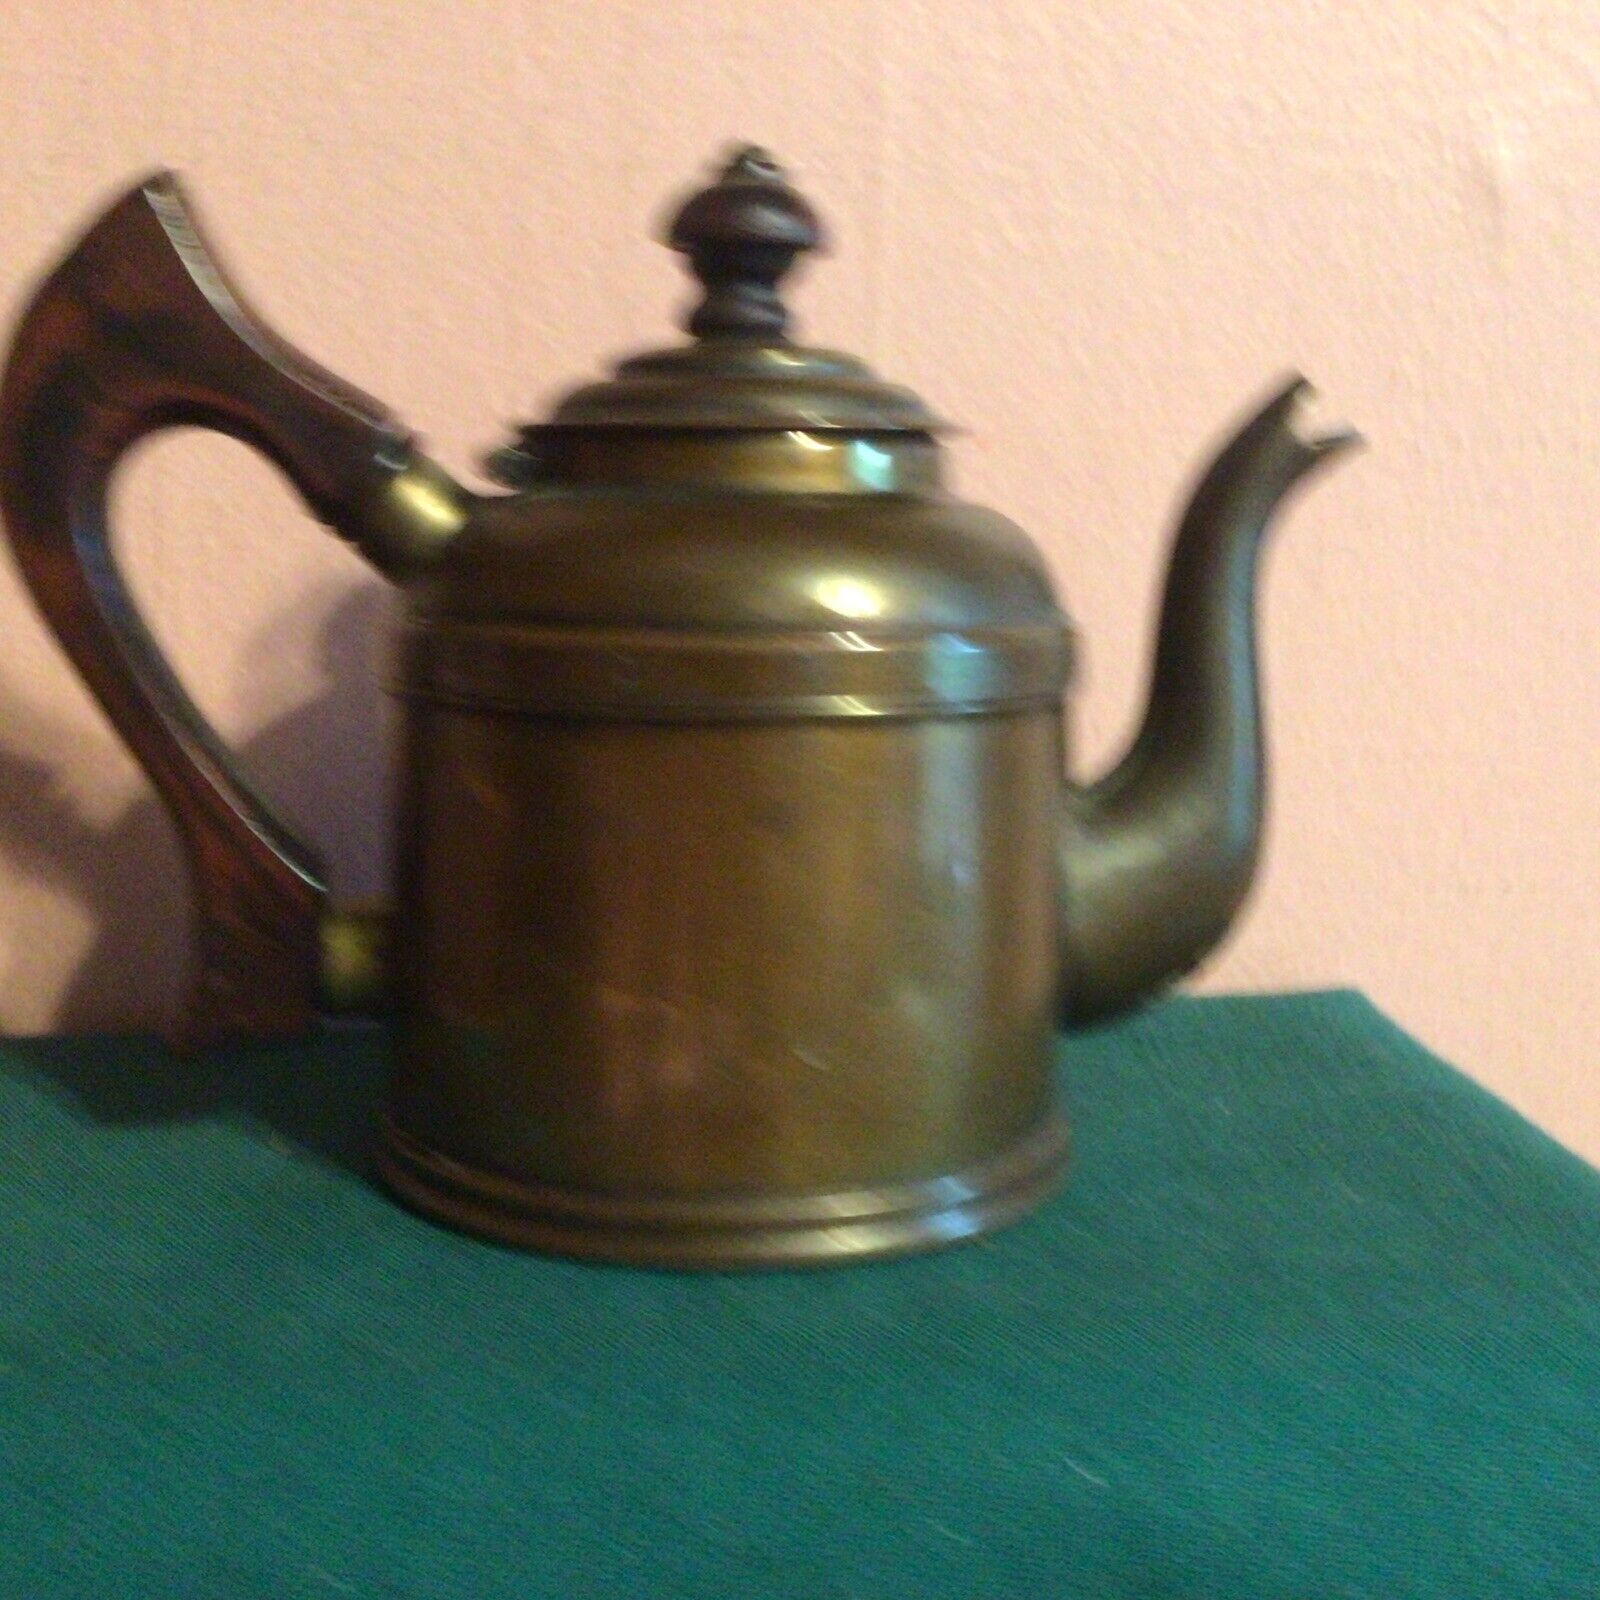 Antique Vintage Majestic Gooseneck Copper Teapot Kettle - Wooden Handle and Knob